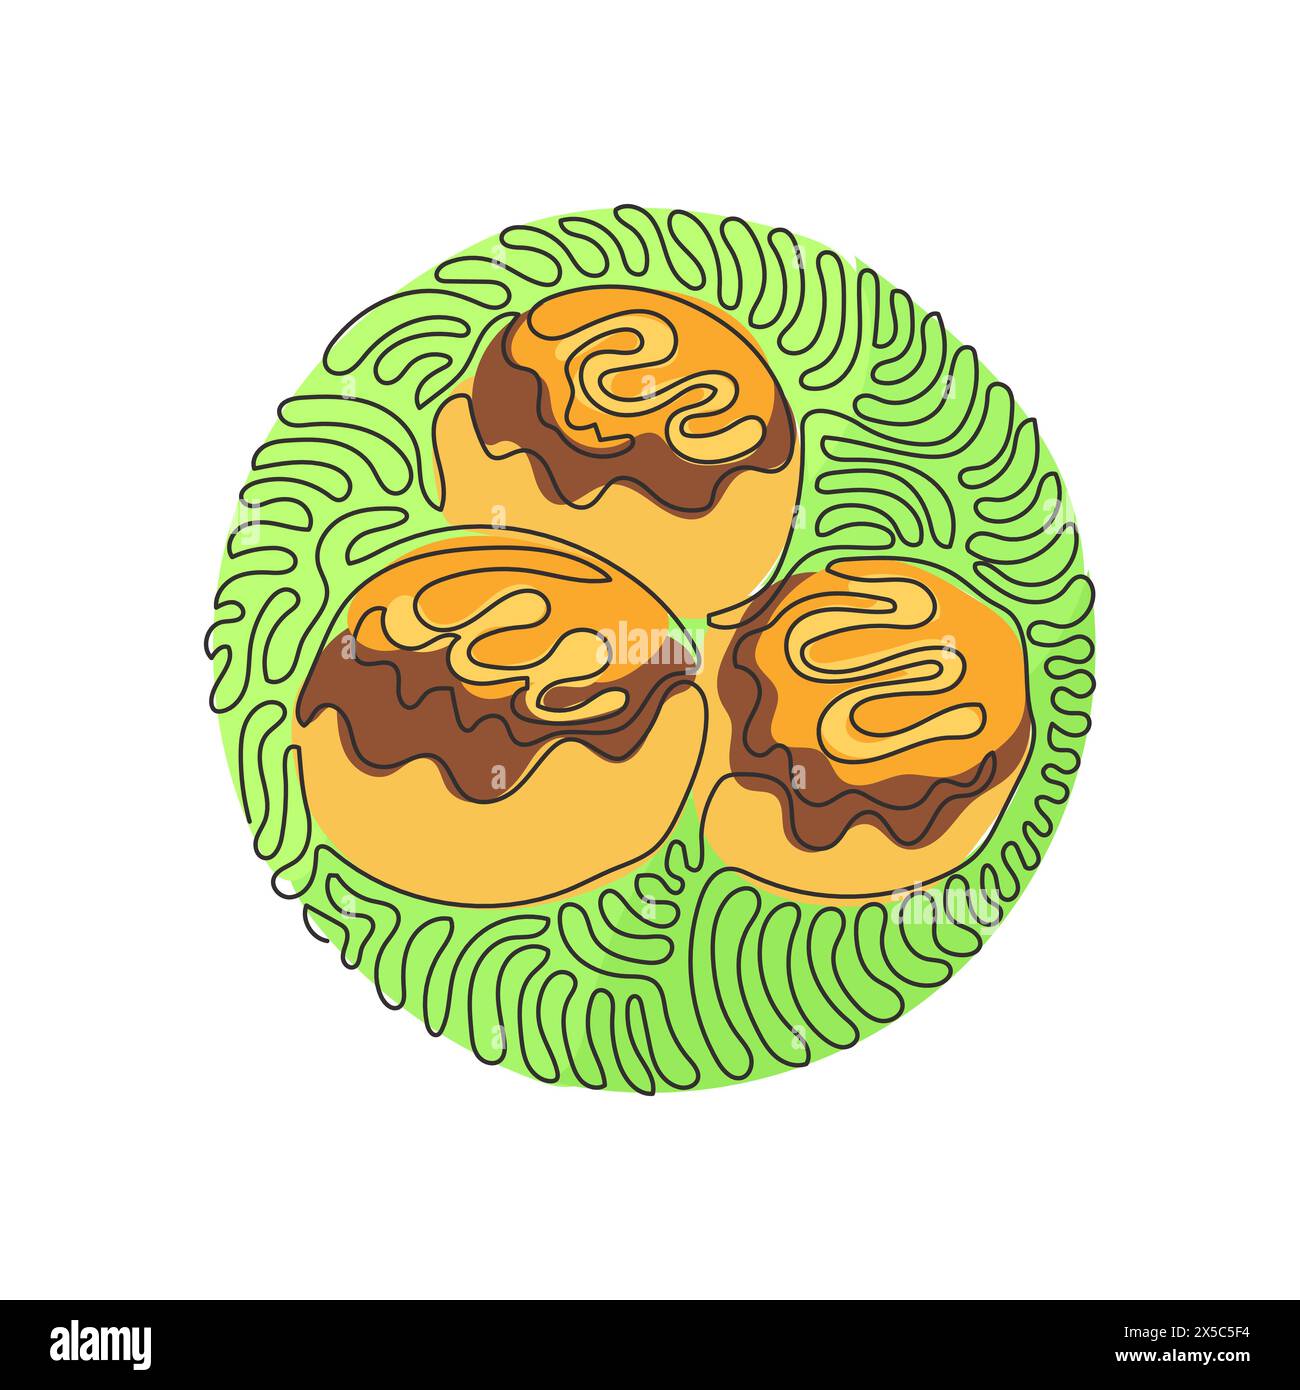 Simple dessin d'une ligne takoyaki, boules de poulpe, fast food japonais. Savoureux snack avec mayonnaise, algues. Style d'arrière-plan de cercle de bouclage de tourbillon. Continue Illustration de Vecteur